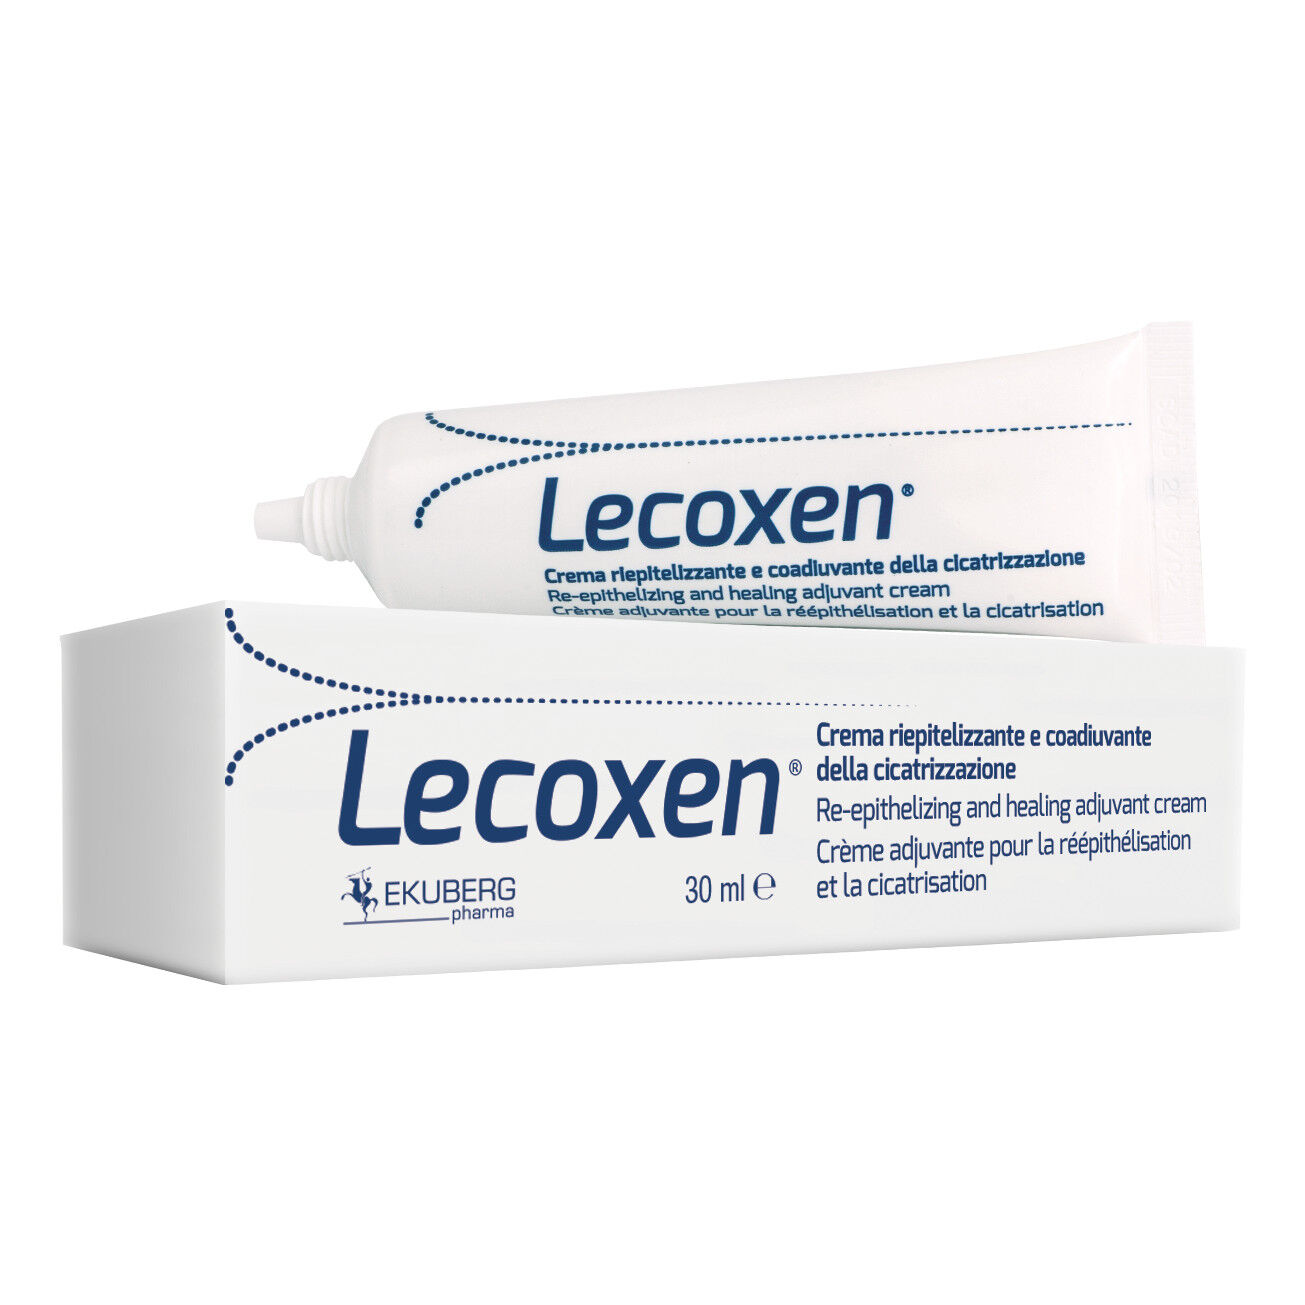 ekuberg pharma s.u.r.l. lecoxen crema riepitelizzante e coadiuvante della cicatrizzazione 30 ml